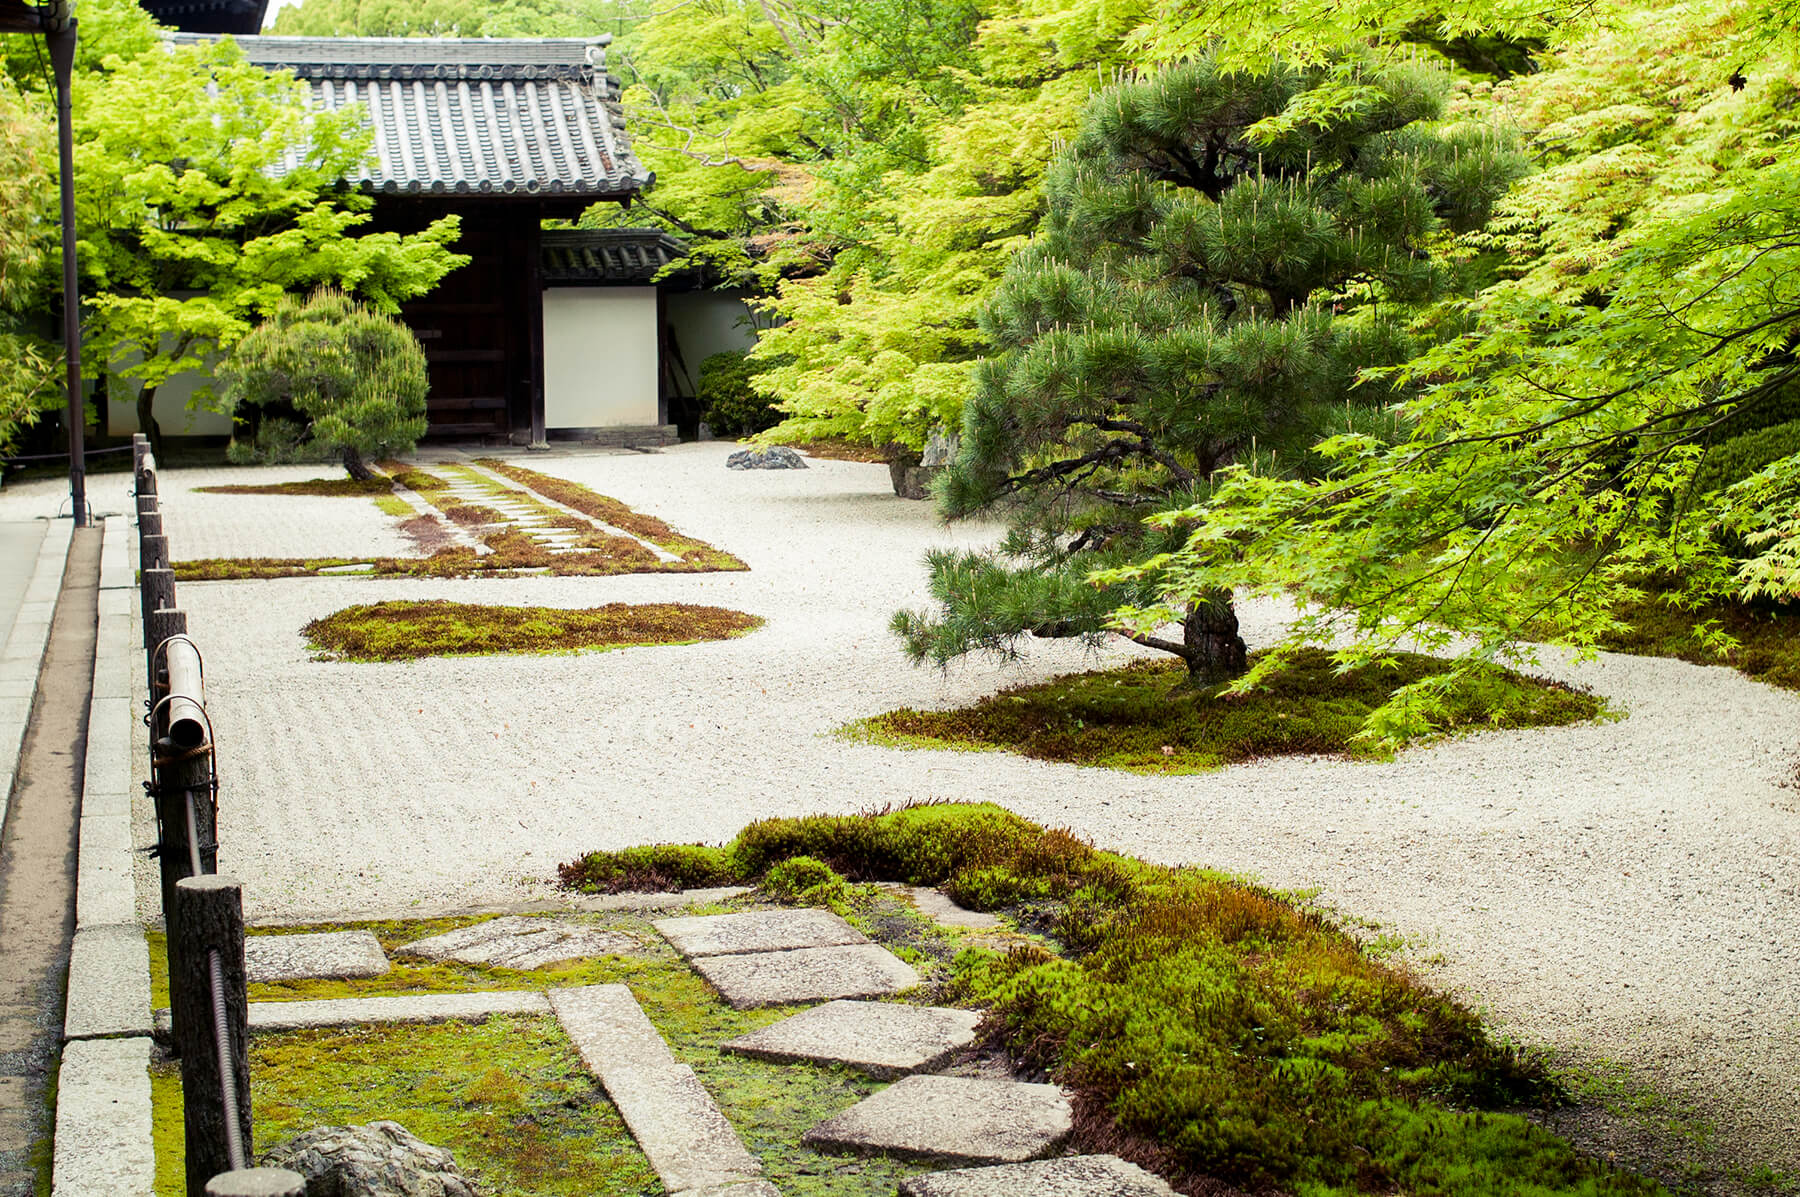 
          京都「南禅寺天授庵」の庭園写真2
      